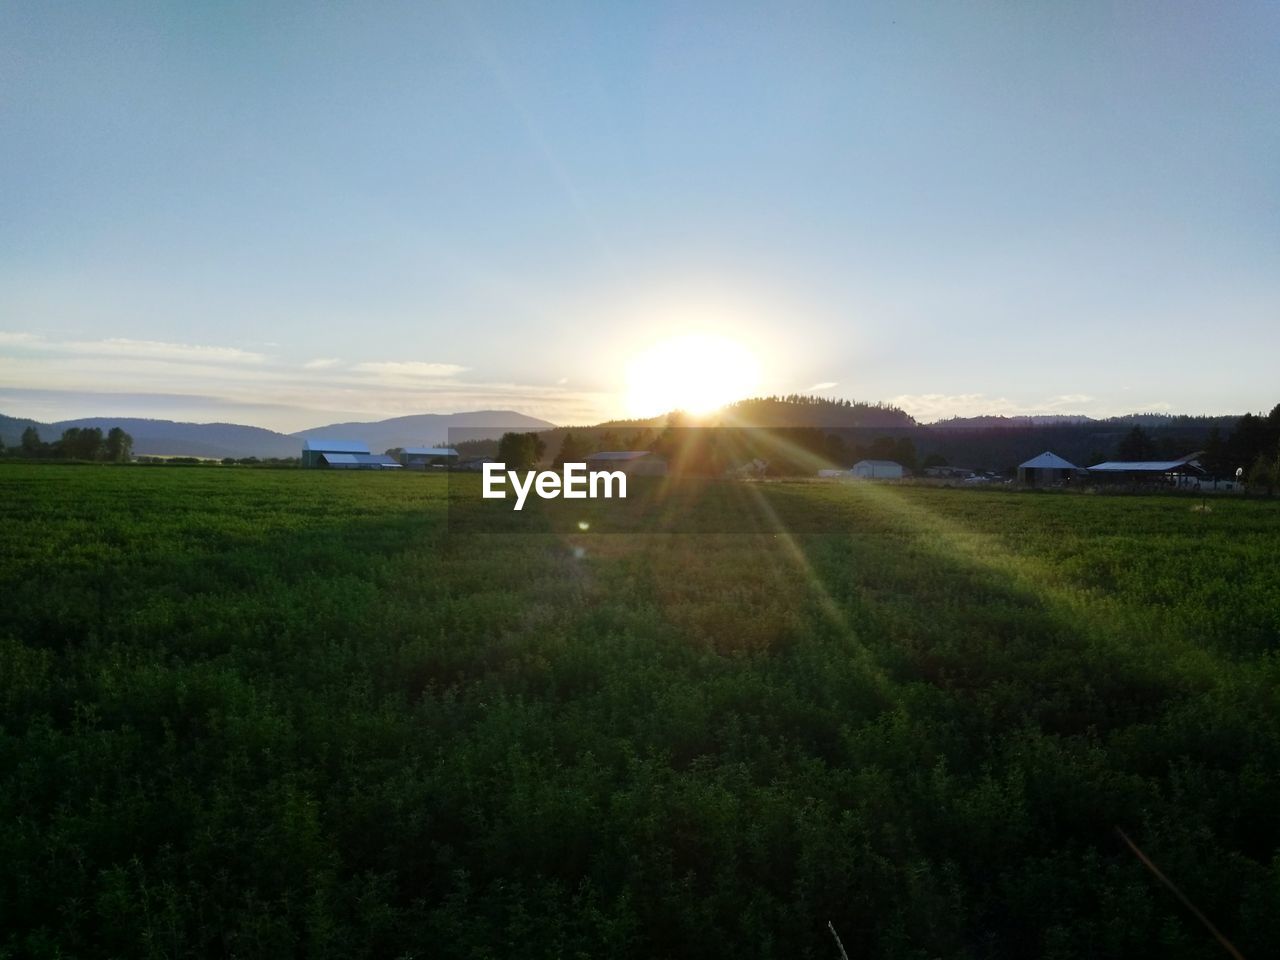 SCENIC VIEW OF GRASSY FIELD AGAINST BRIGHT SUN